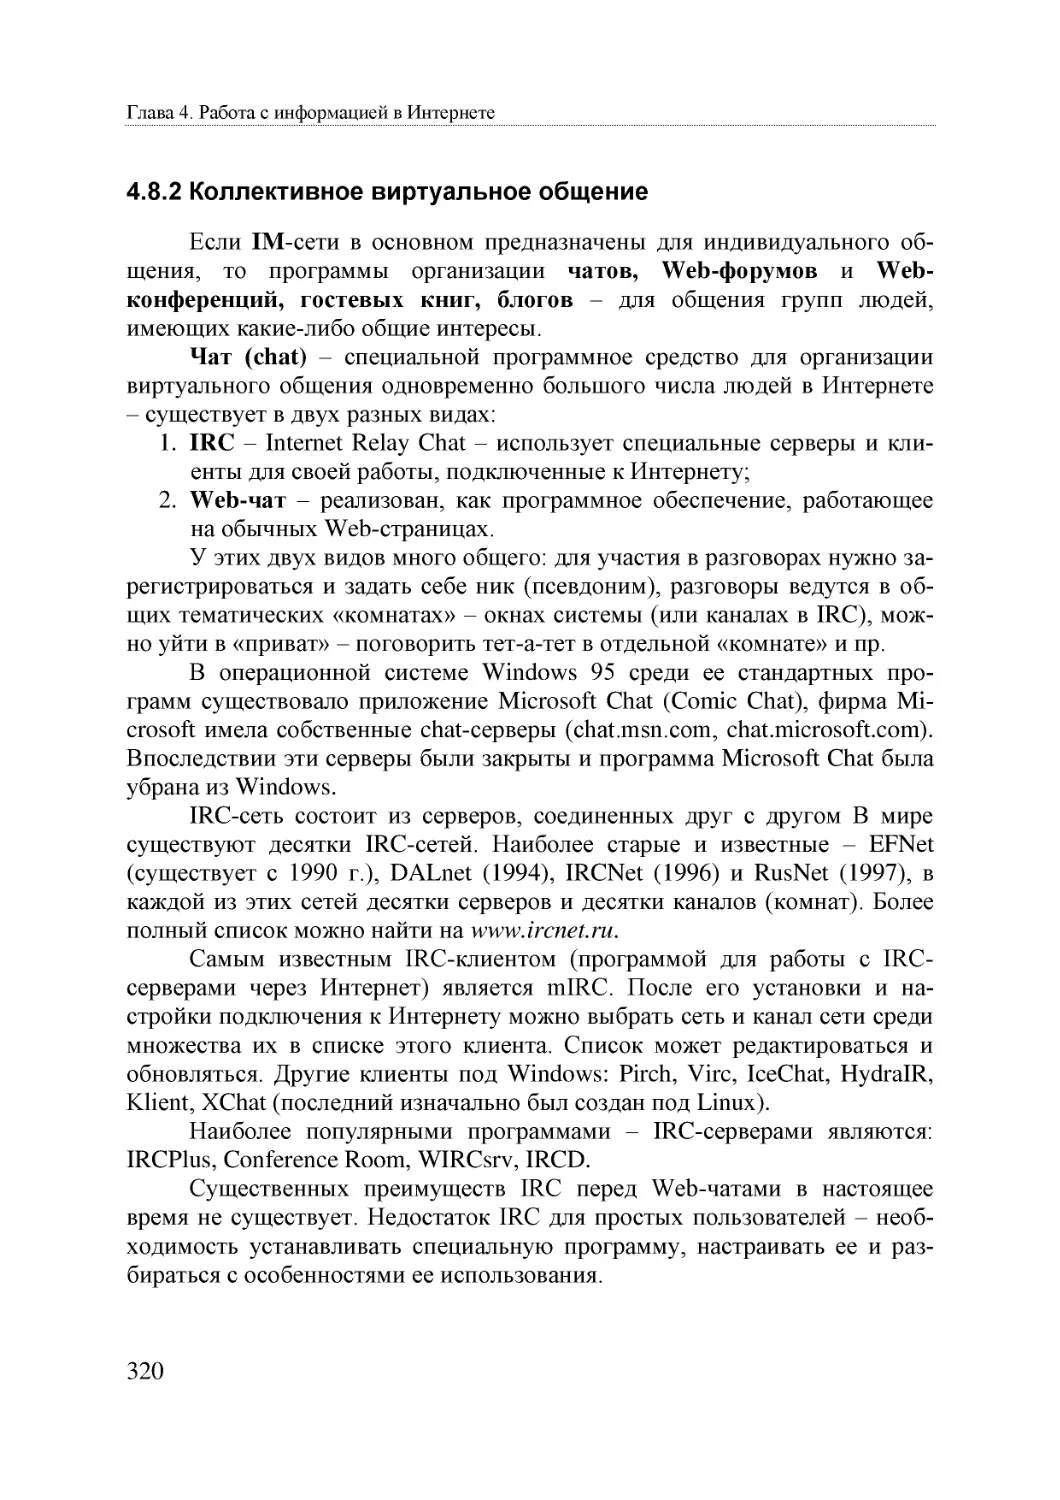 Informatika_Uchebnik_dlya_vuzov_2010 320